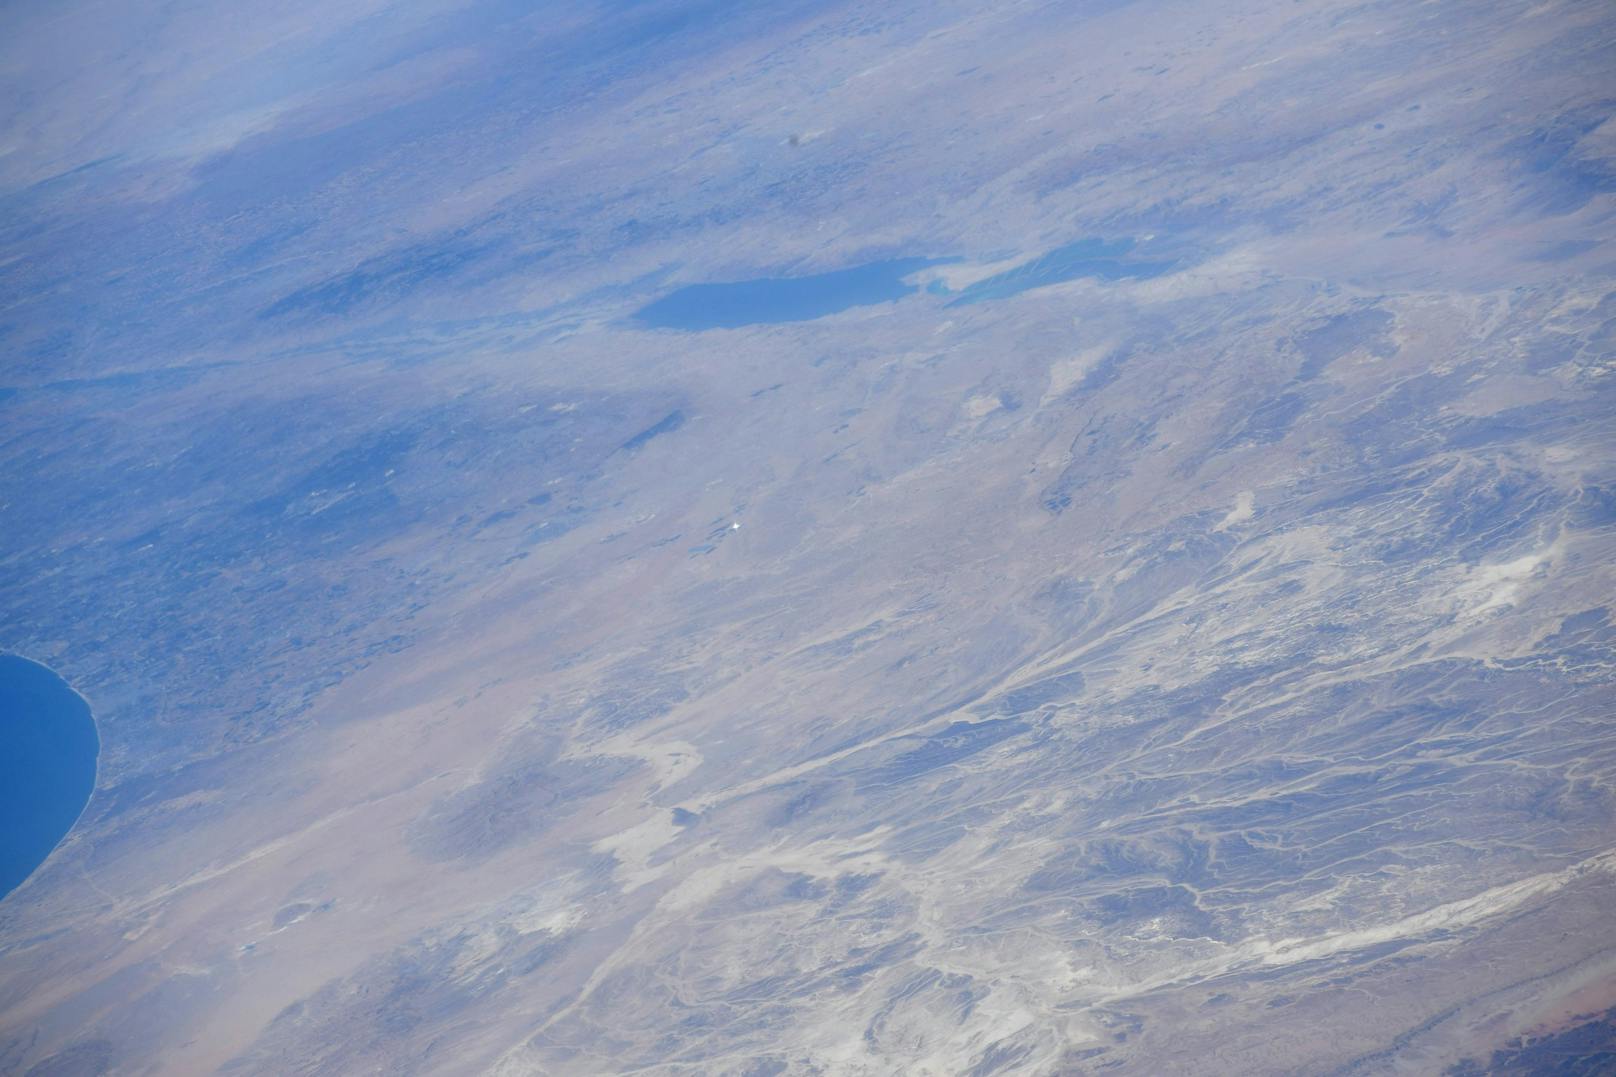 Dabei ist der winzig kleine, aber weithin strahlende Punkt in der Wüste Negev gut zu erkennen.